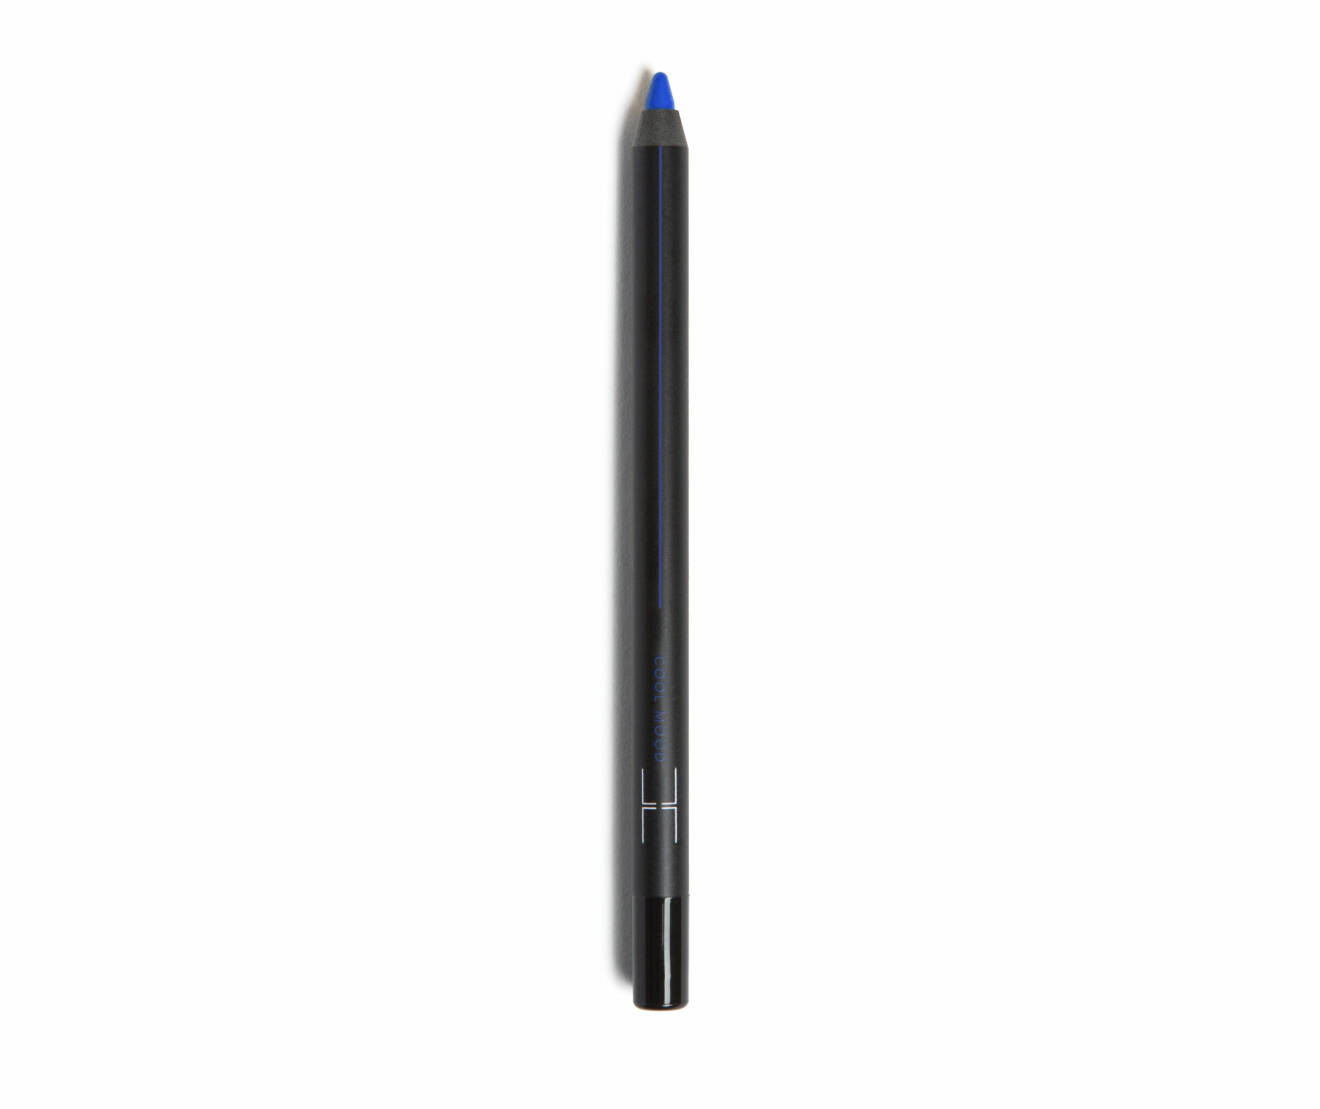 Crayon i blått från LH Cosmetics